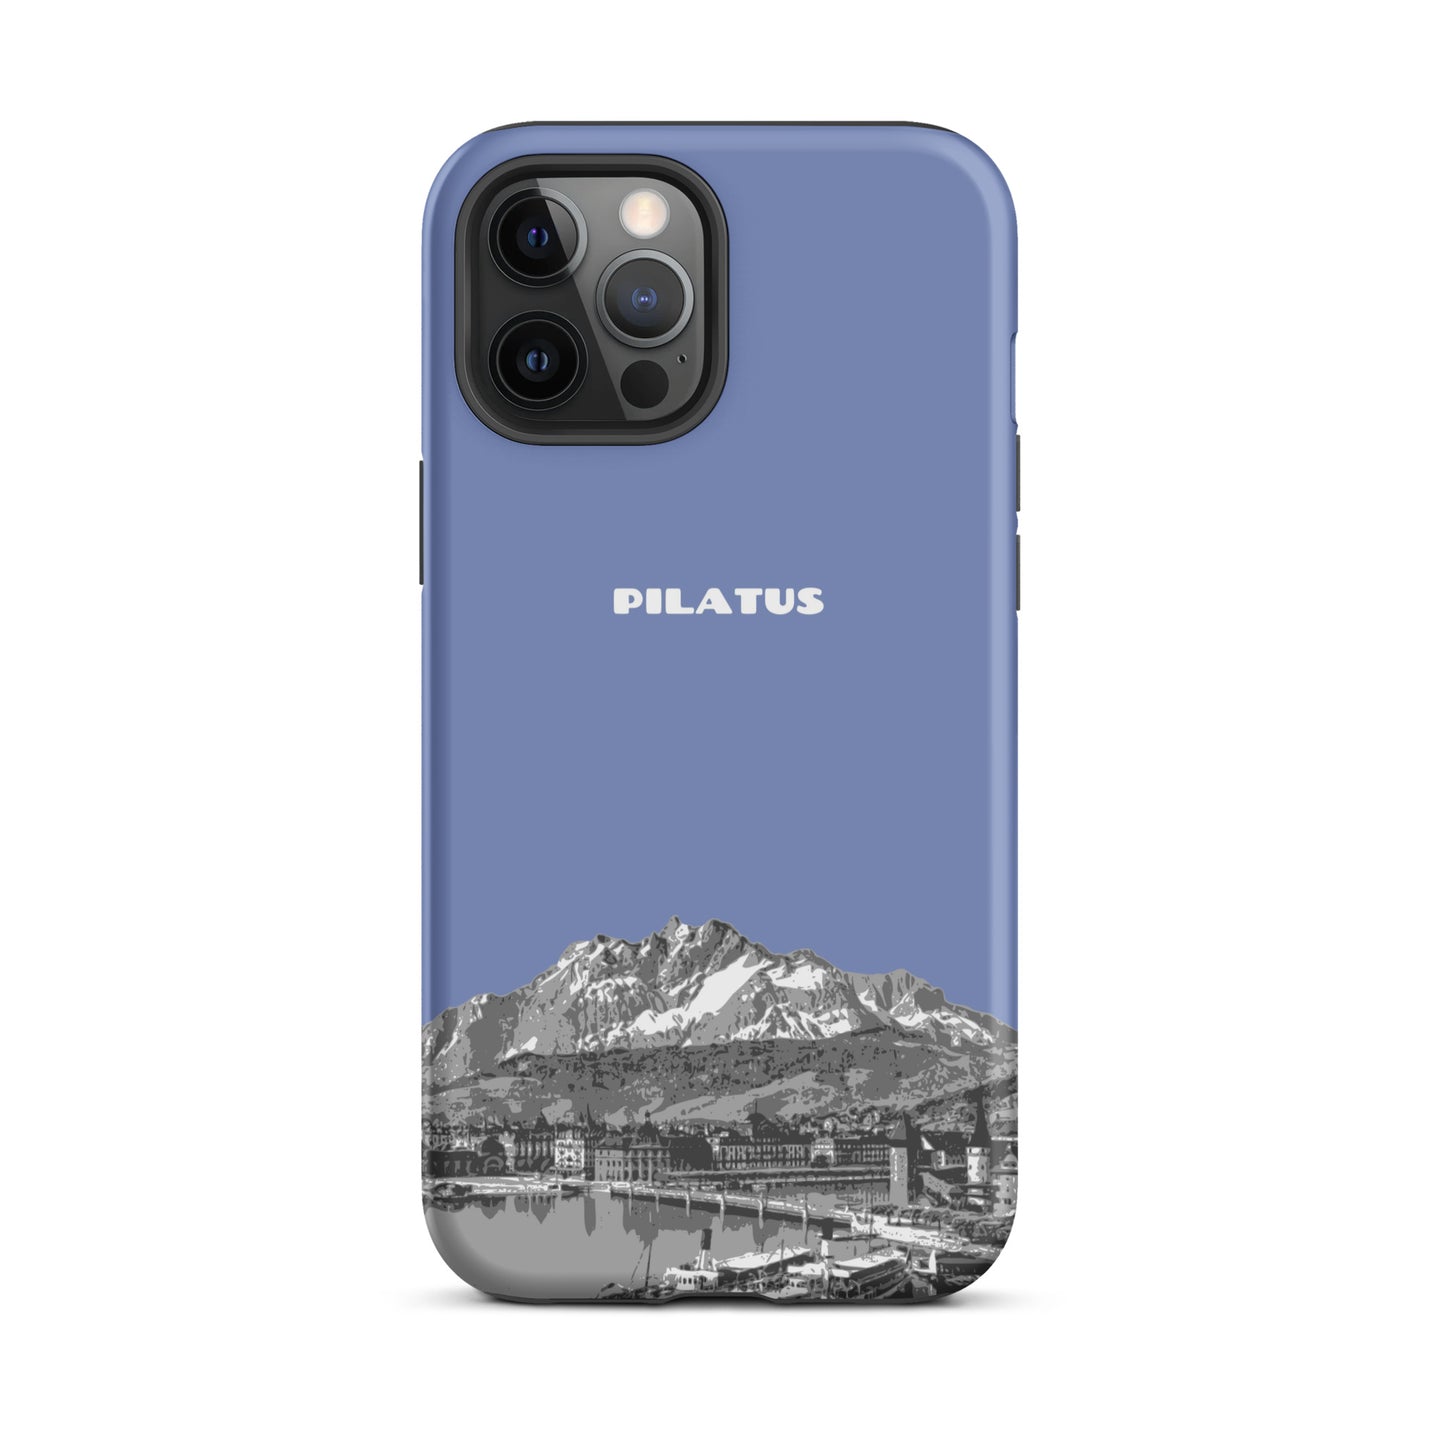 iPhone Case - Pilatus - Pastellblau